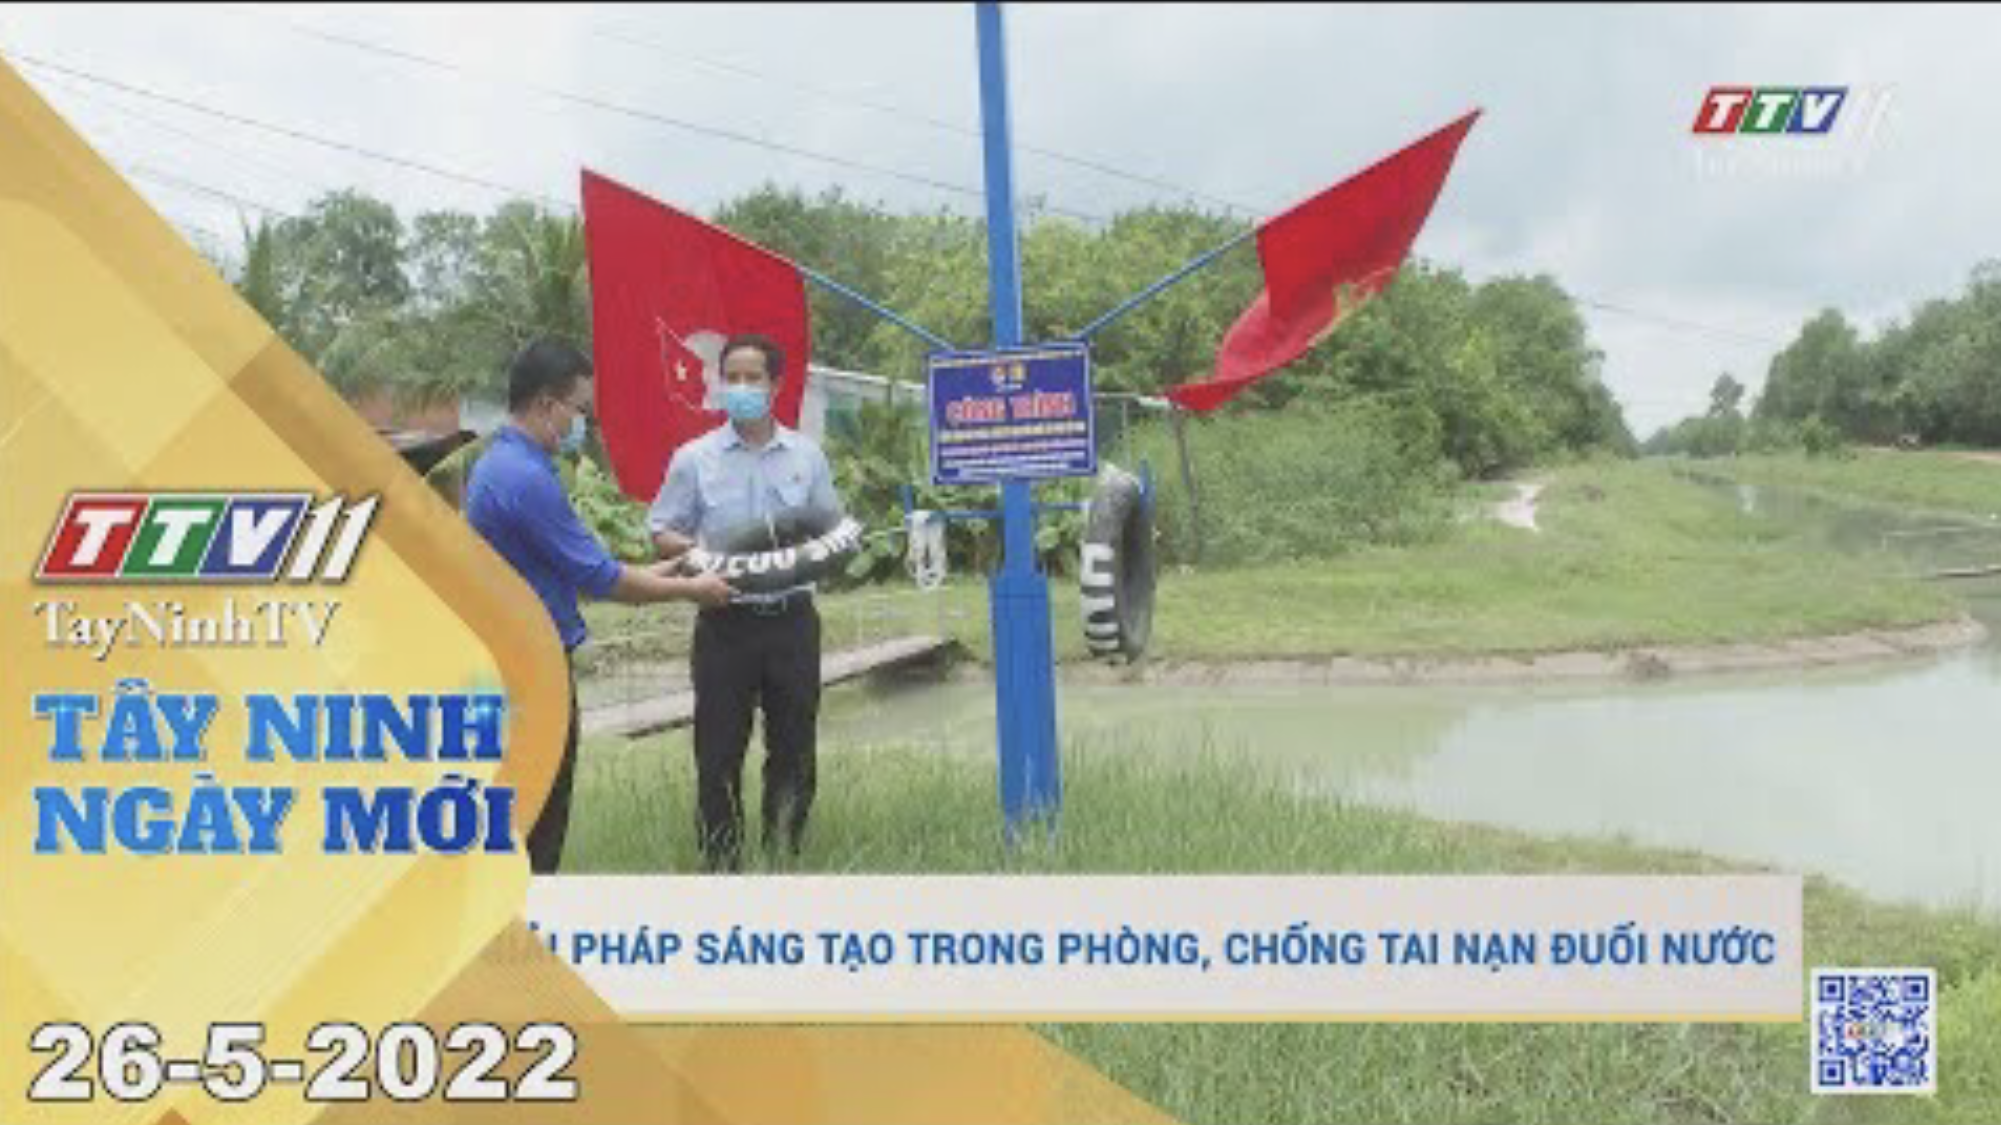 Tây Ninh ngày mới 26-5-2022 | Tin tức hôm nay | TayNinhTV